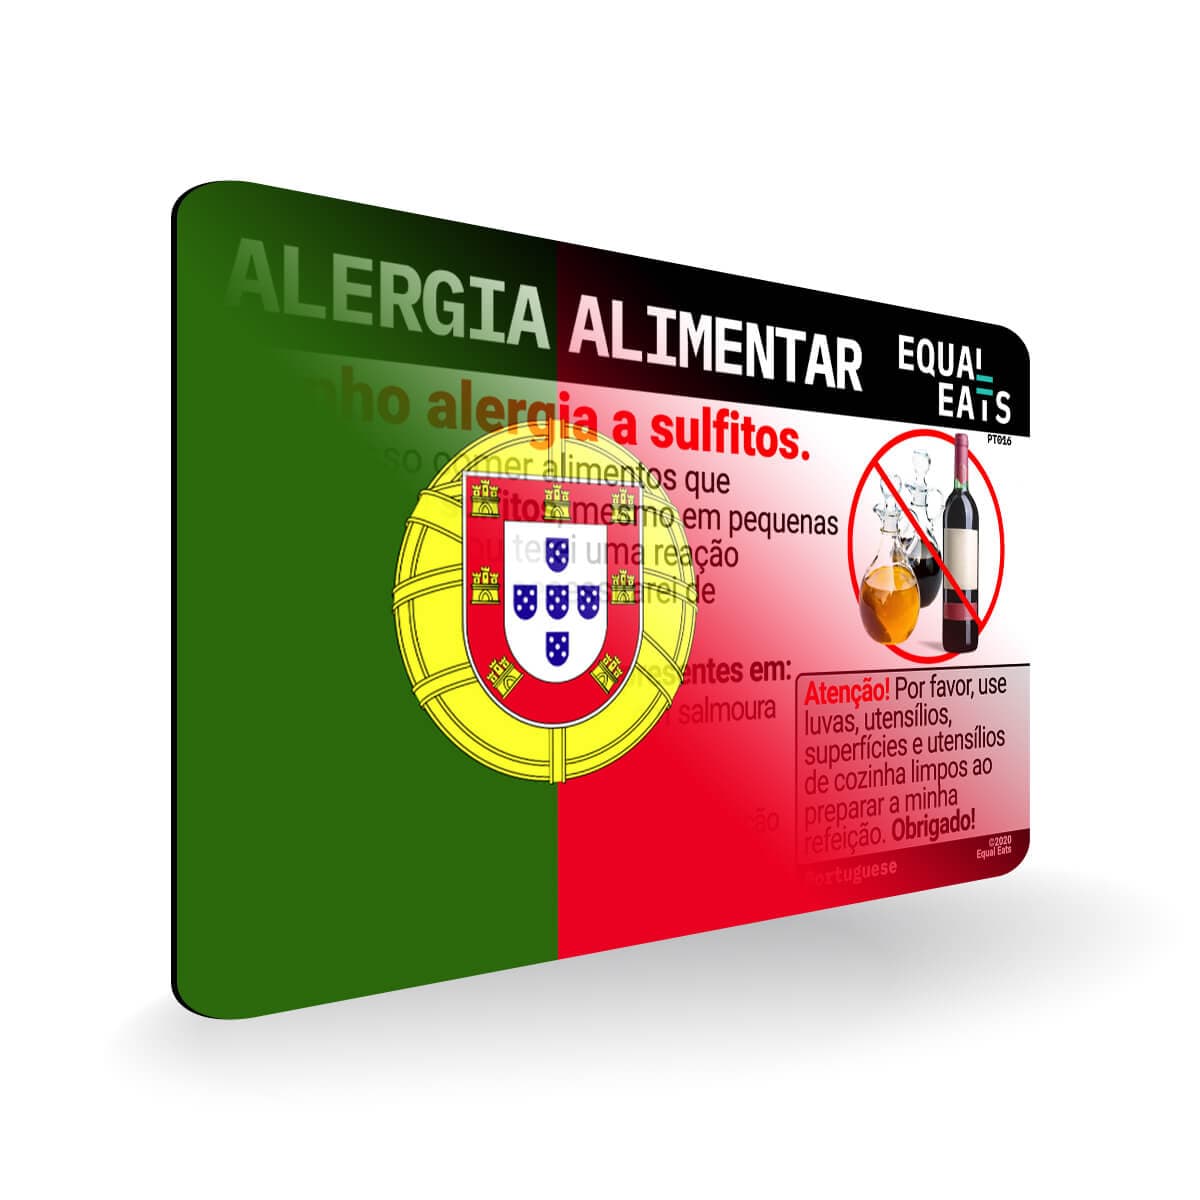 Sulfite Allergy in Portuguese. Sulfite Allergy Card for Portugal